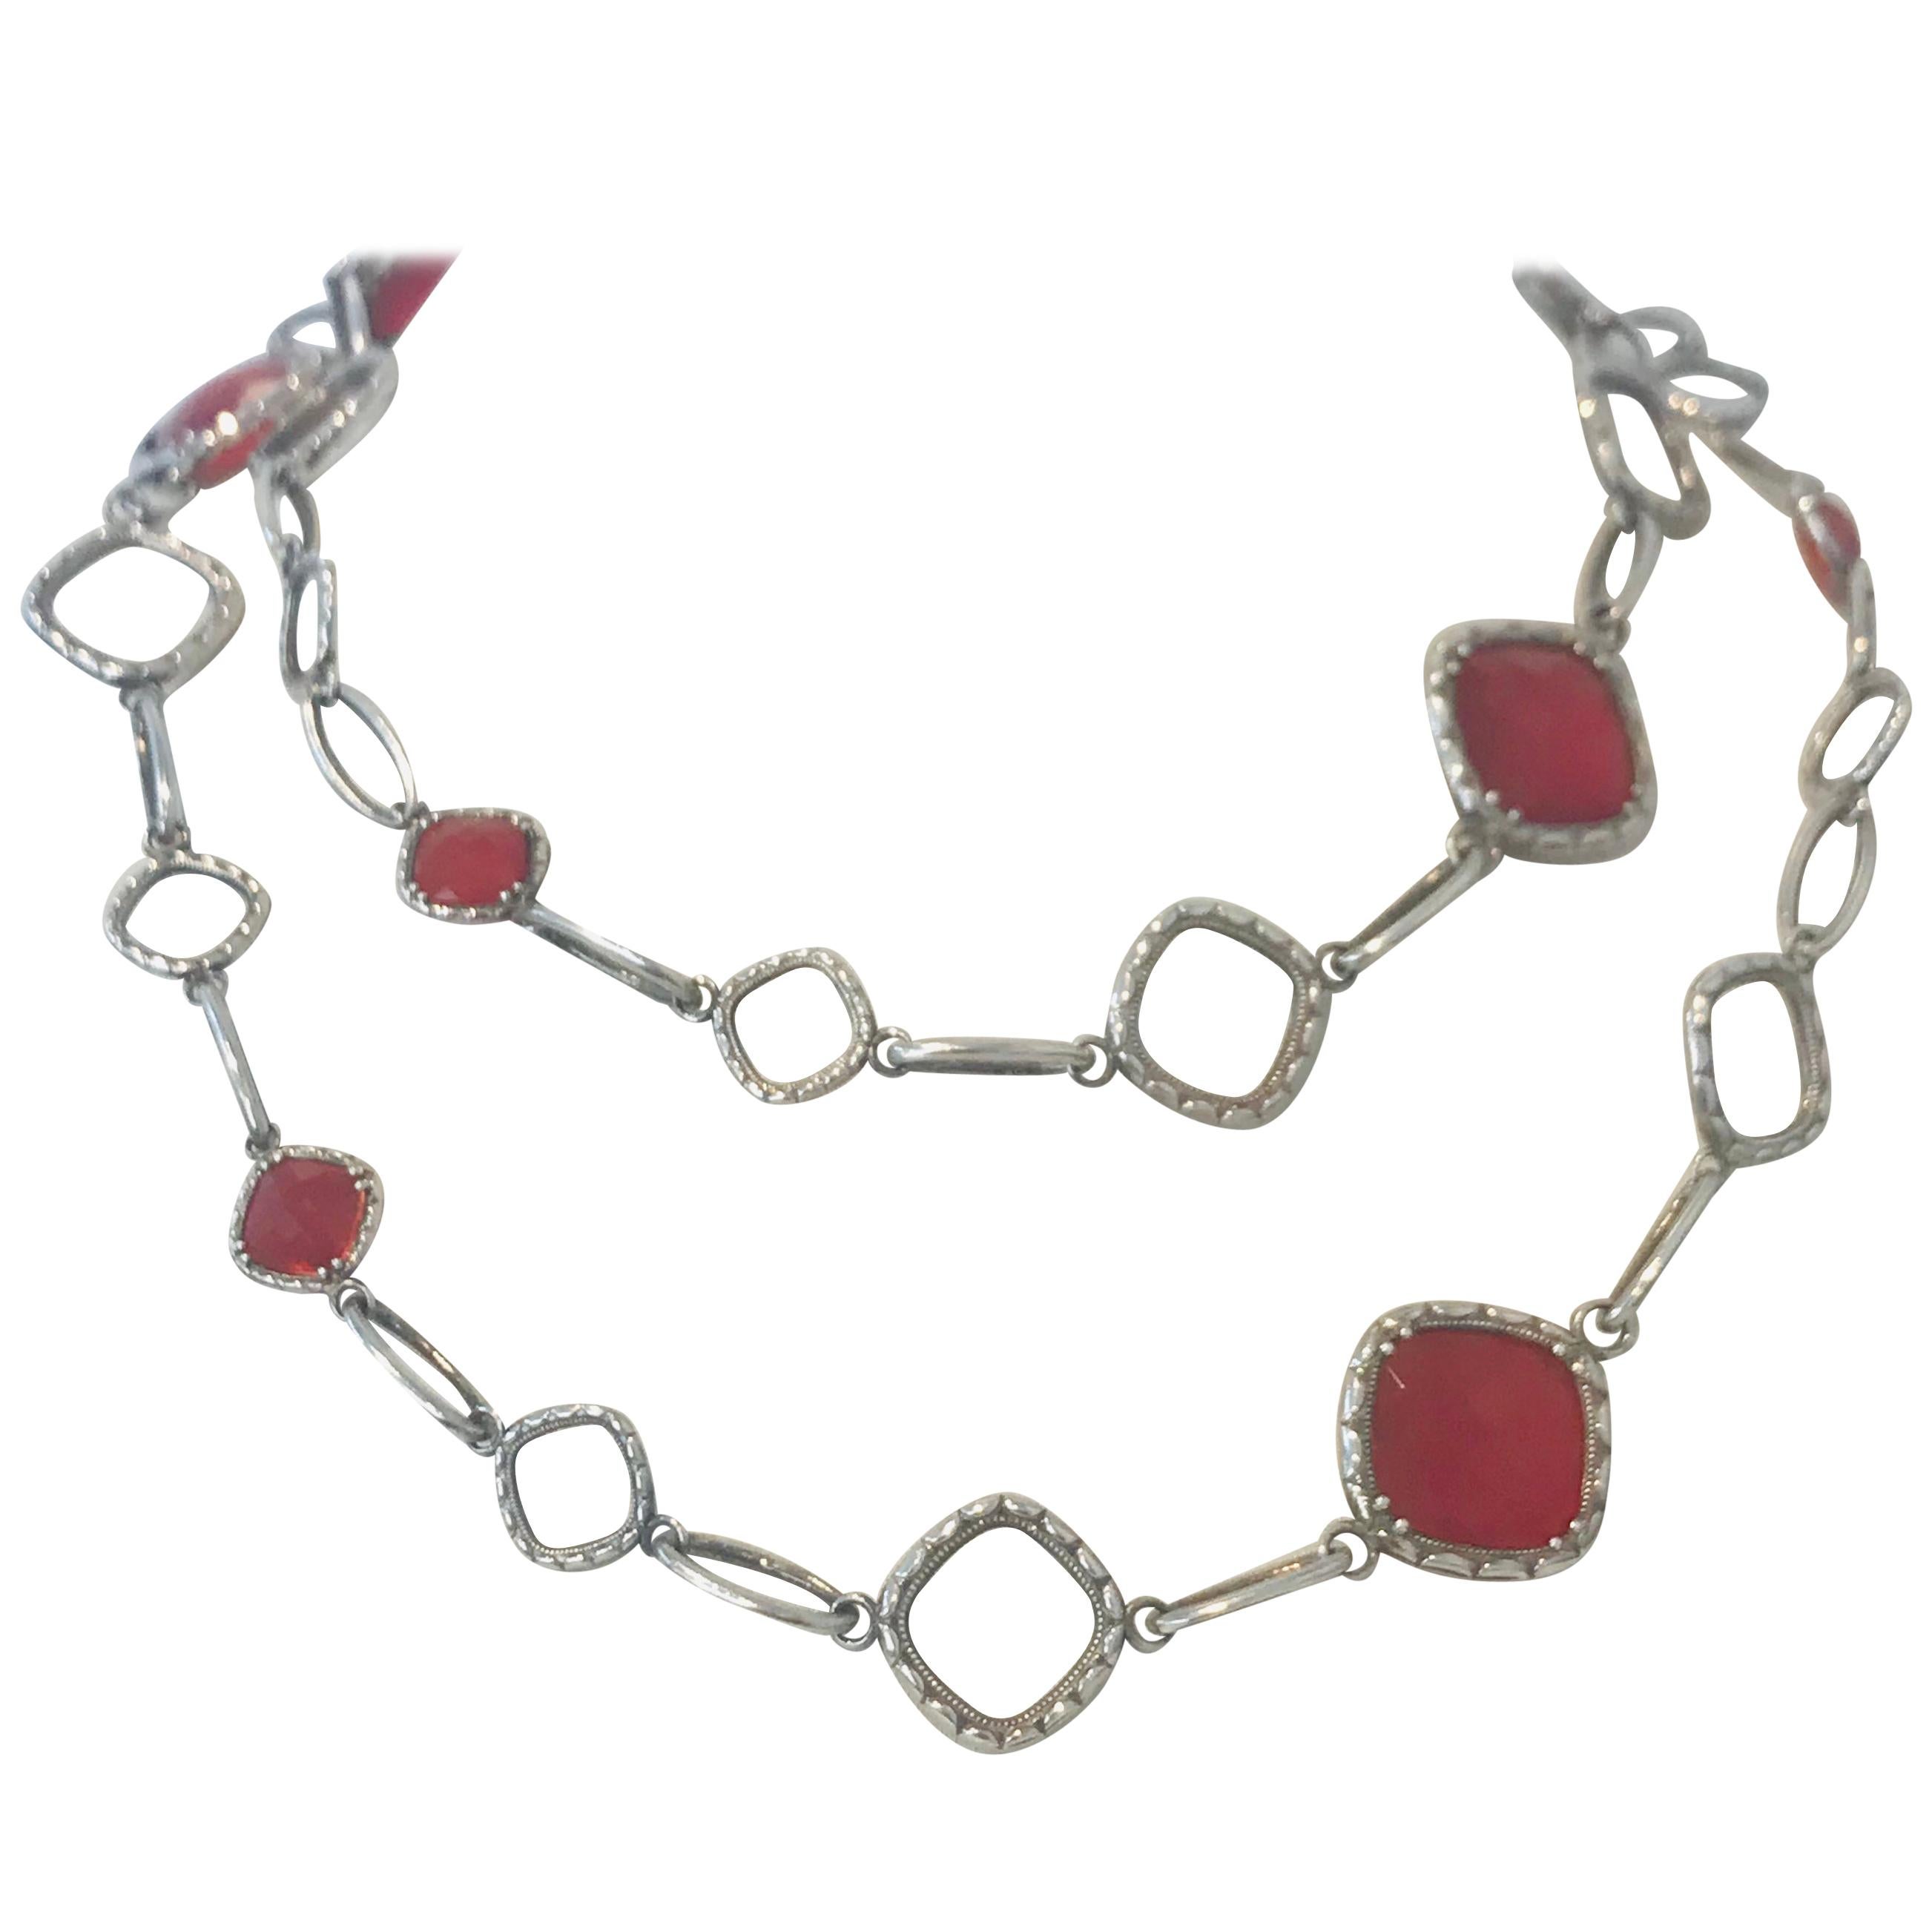 Original Rare Tacori Cascading Gem Necklace Featuring Clear Quartz over Red Onyx